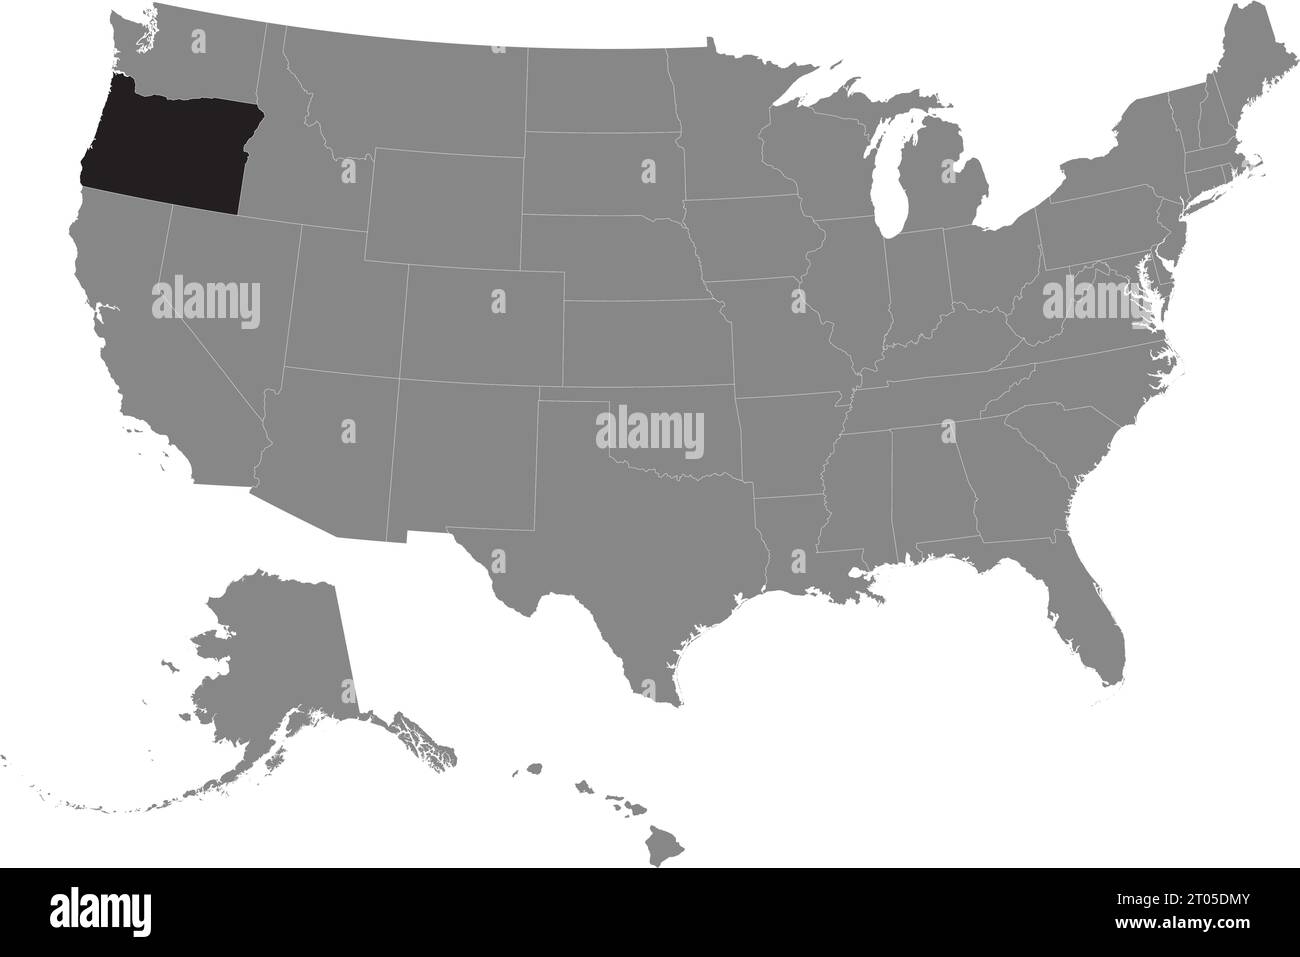 Schwarze CMYK-Bundeskarte von OREGON in detaillierter grauer, leerer politischer Karte der Vereinigten Staaten von Amerika auf transparentem Hintergrund Stock Vektor